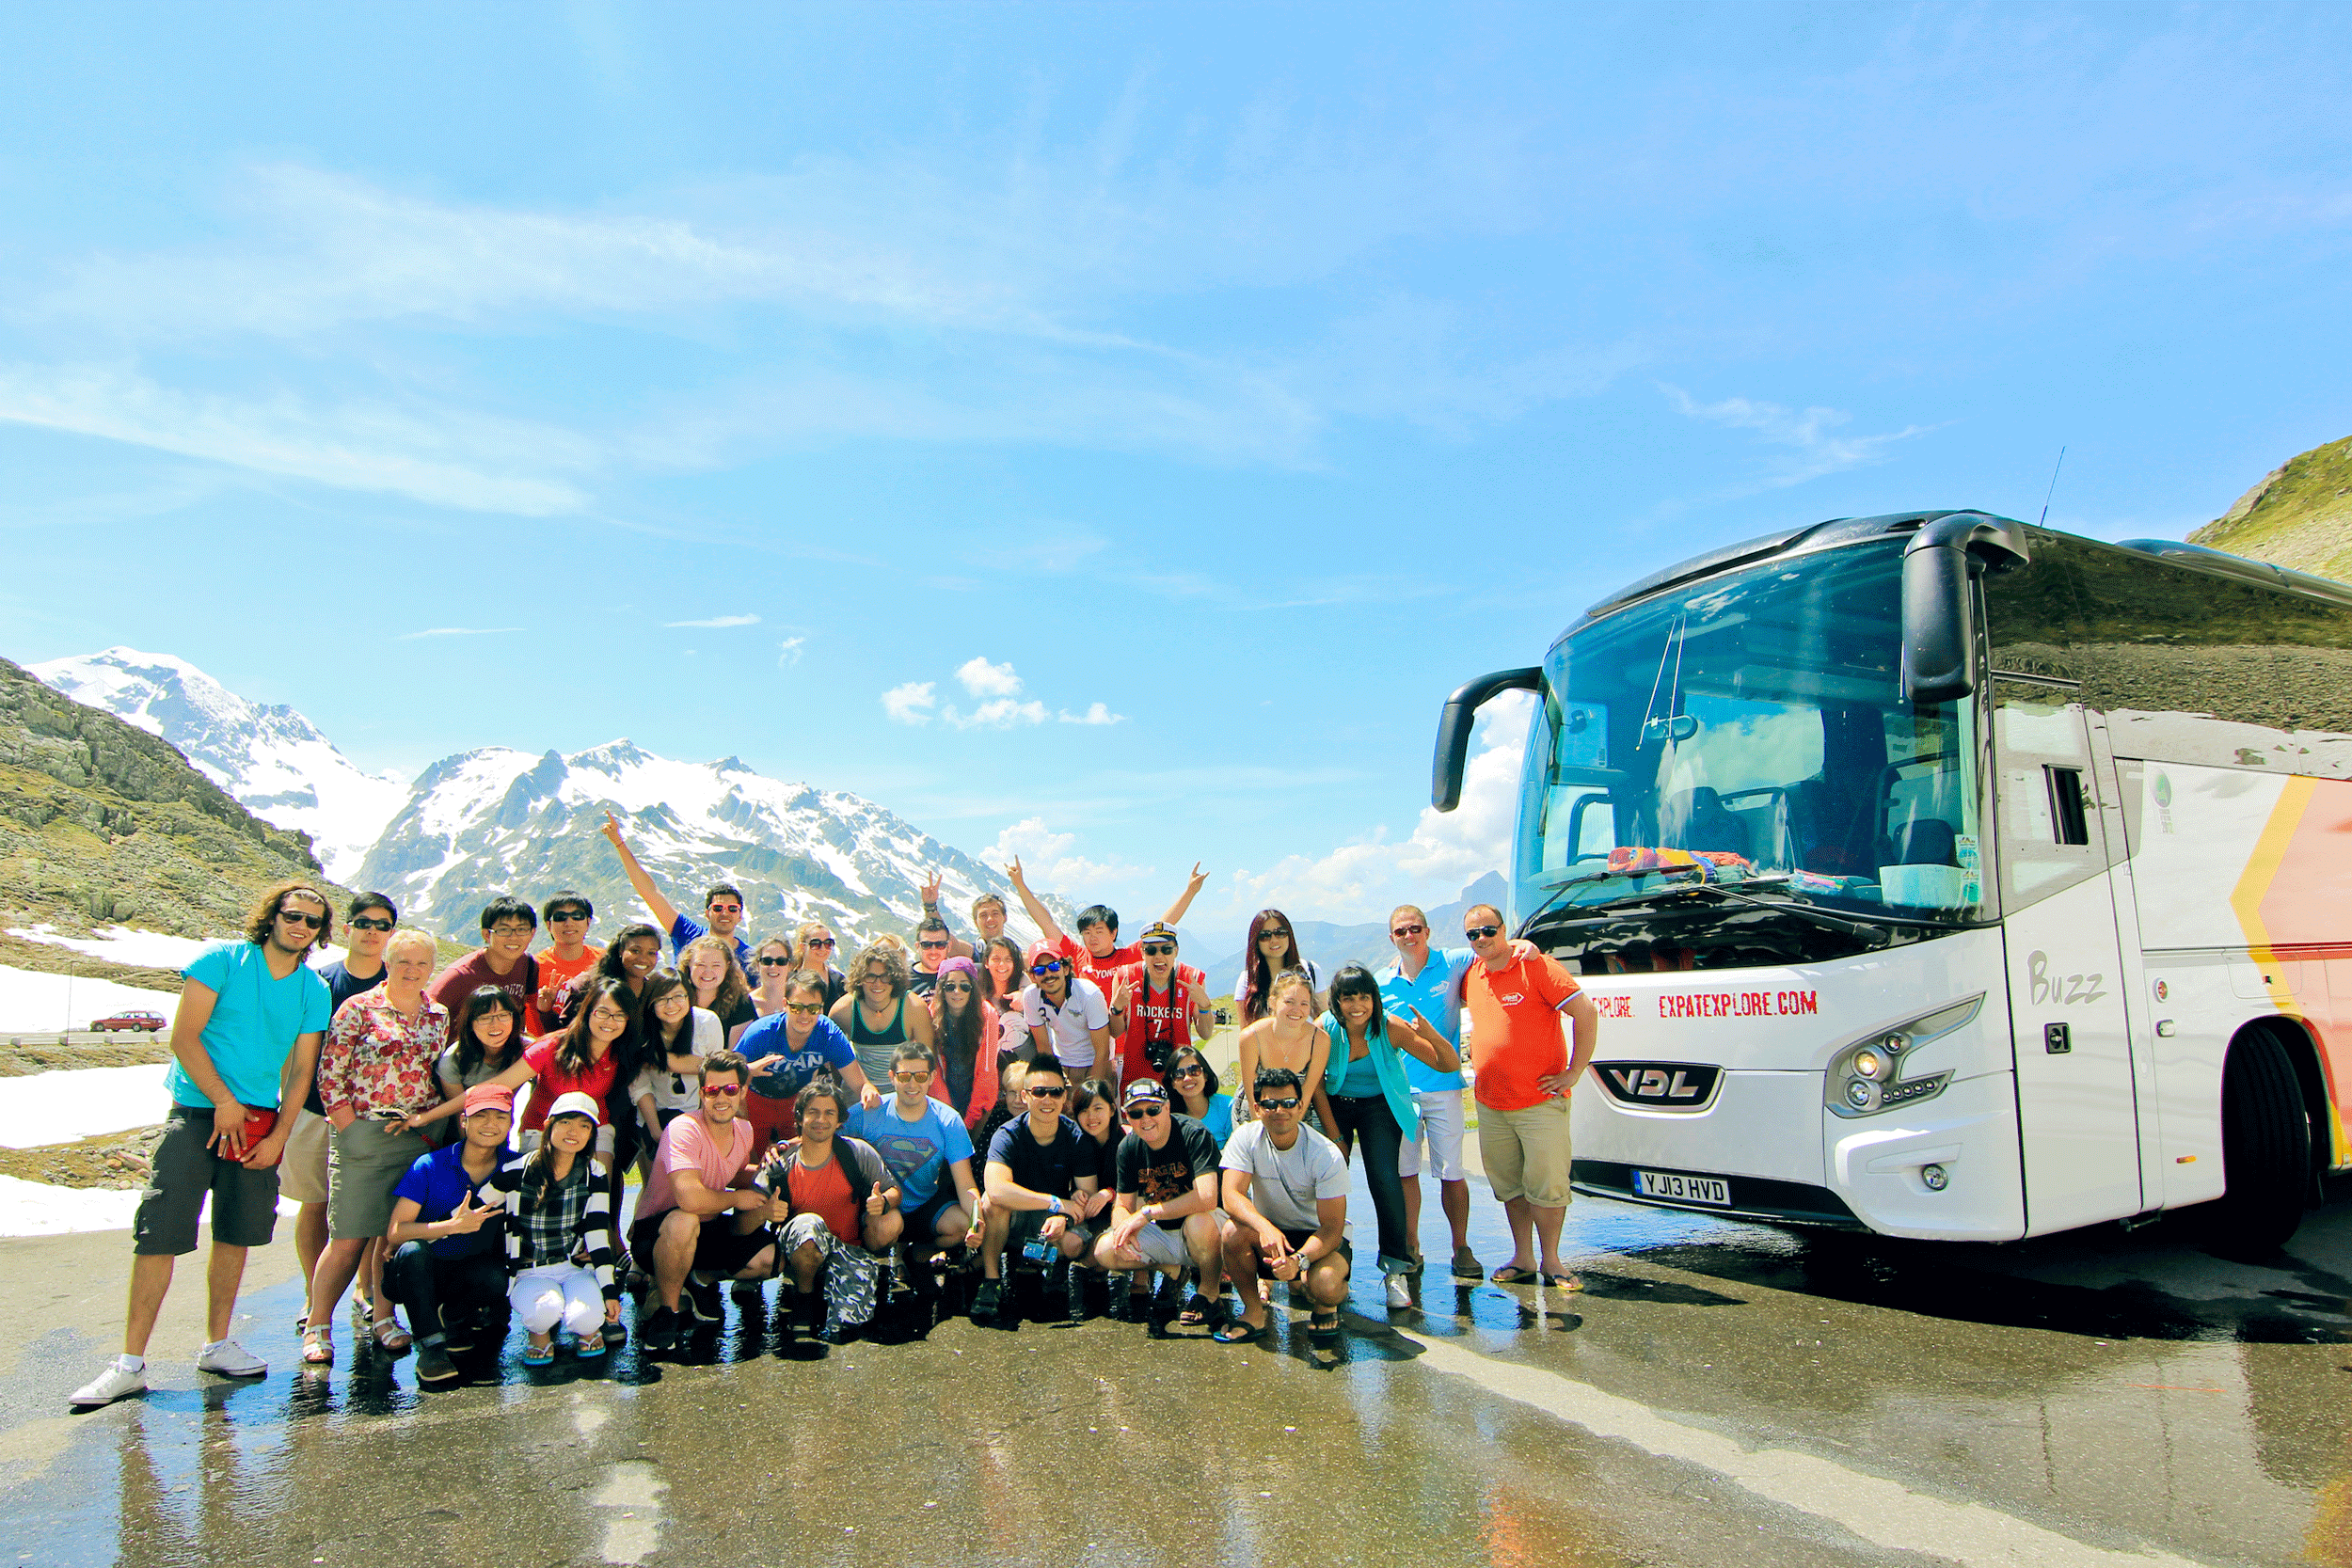 coach tours to austria from scotland